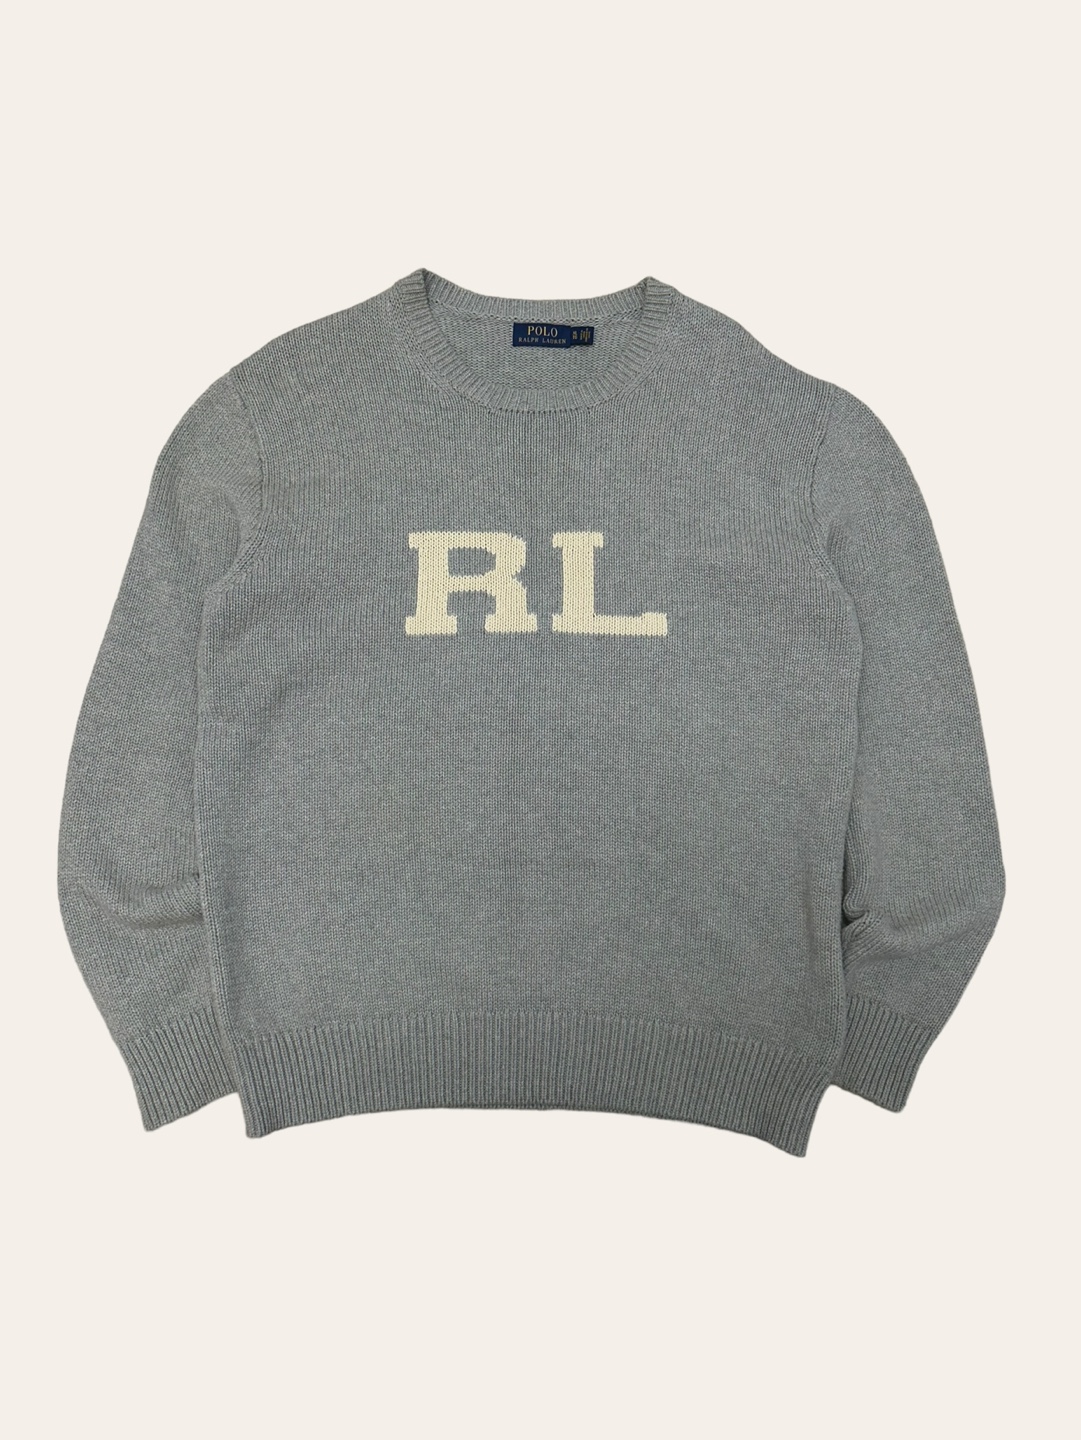 Polo ralph lauren gray RL logo sweater XL